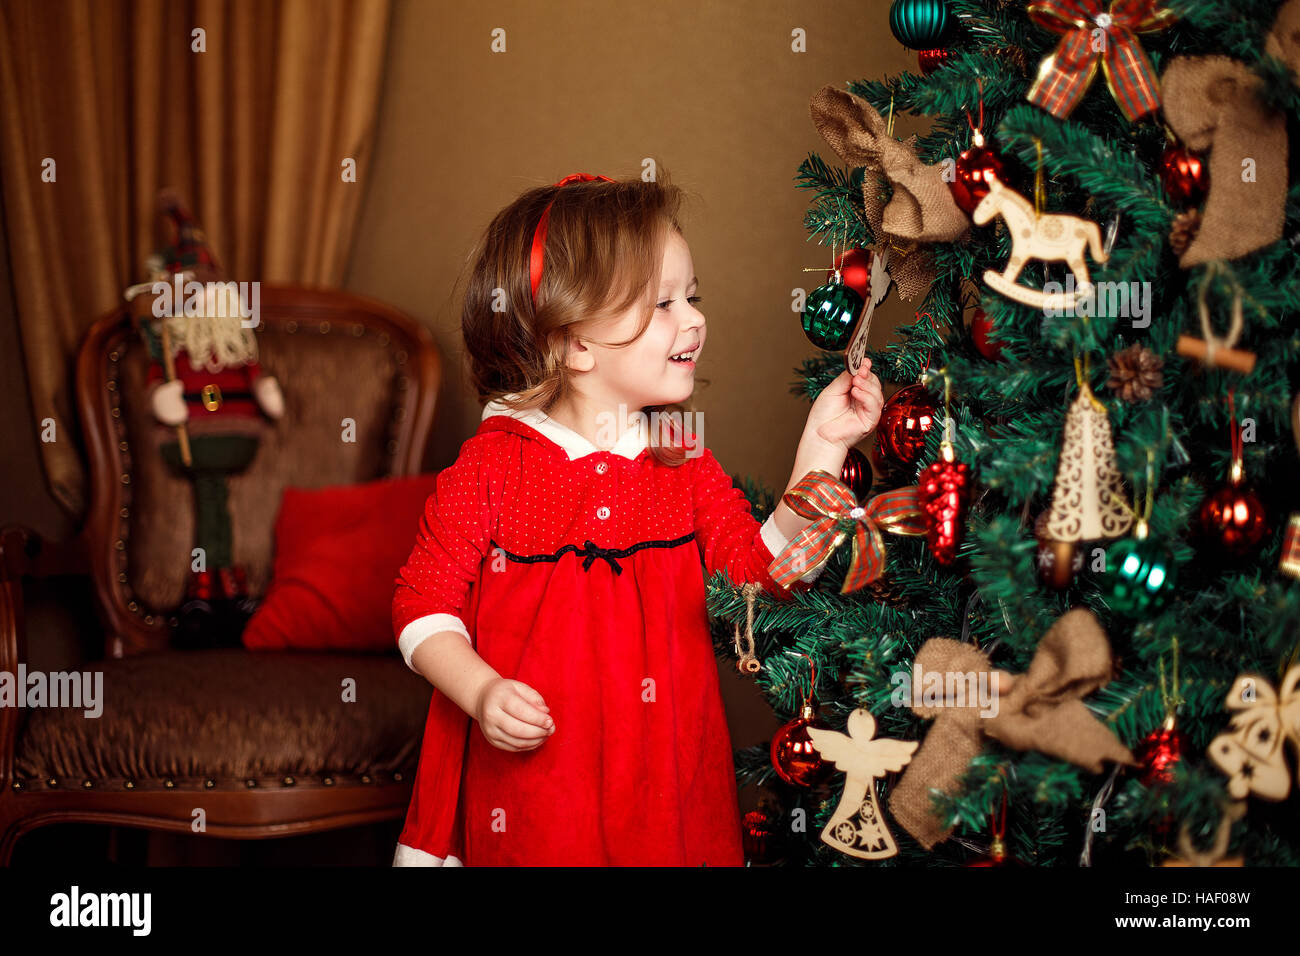 Stehen Mädchen stellt Dekoration zu einem Weihnachtsbaum. Vertikale ind Stockfoto